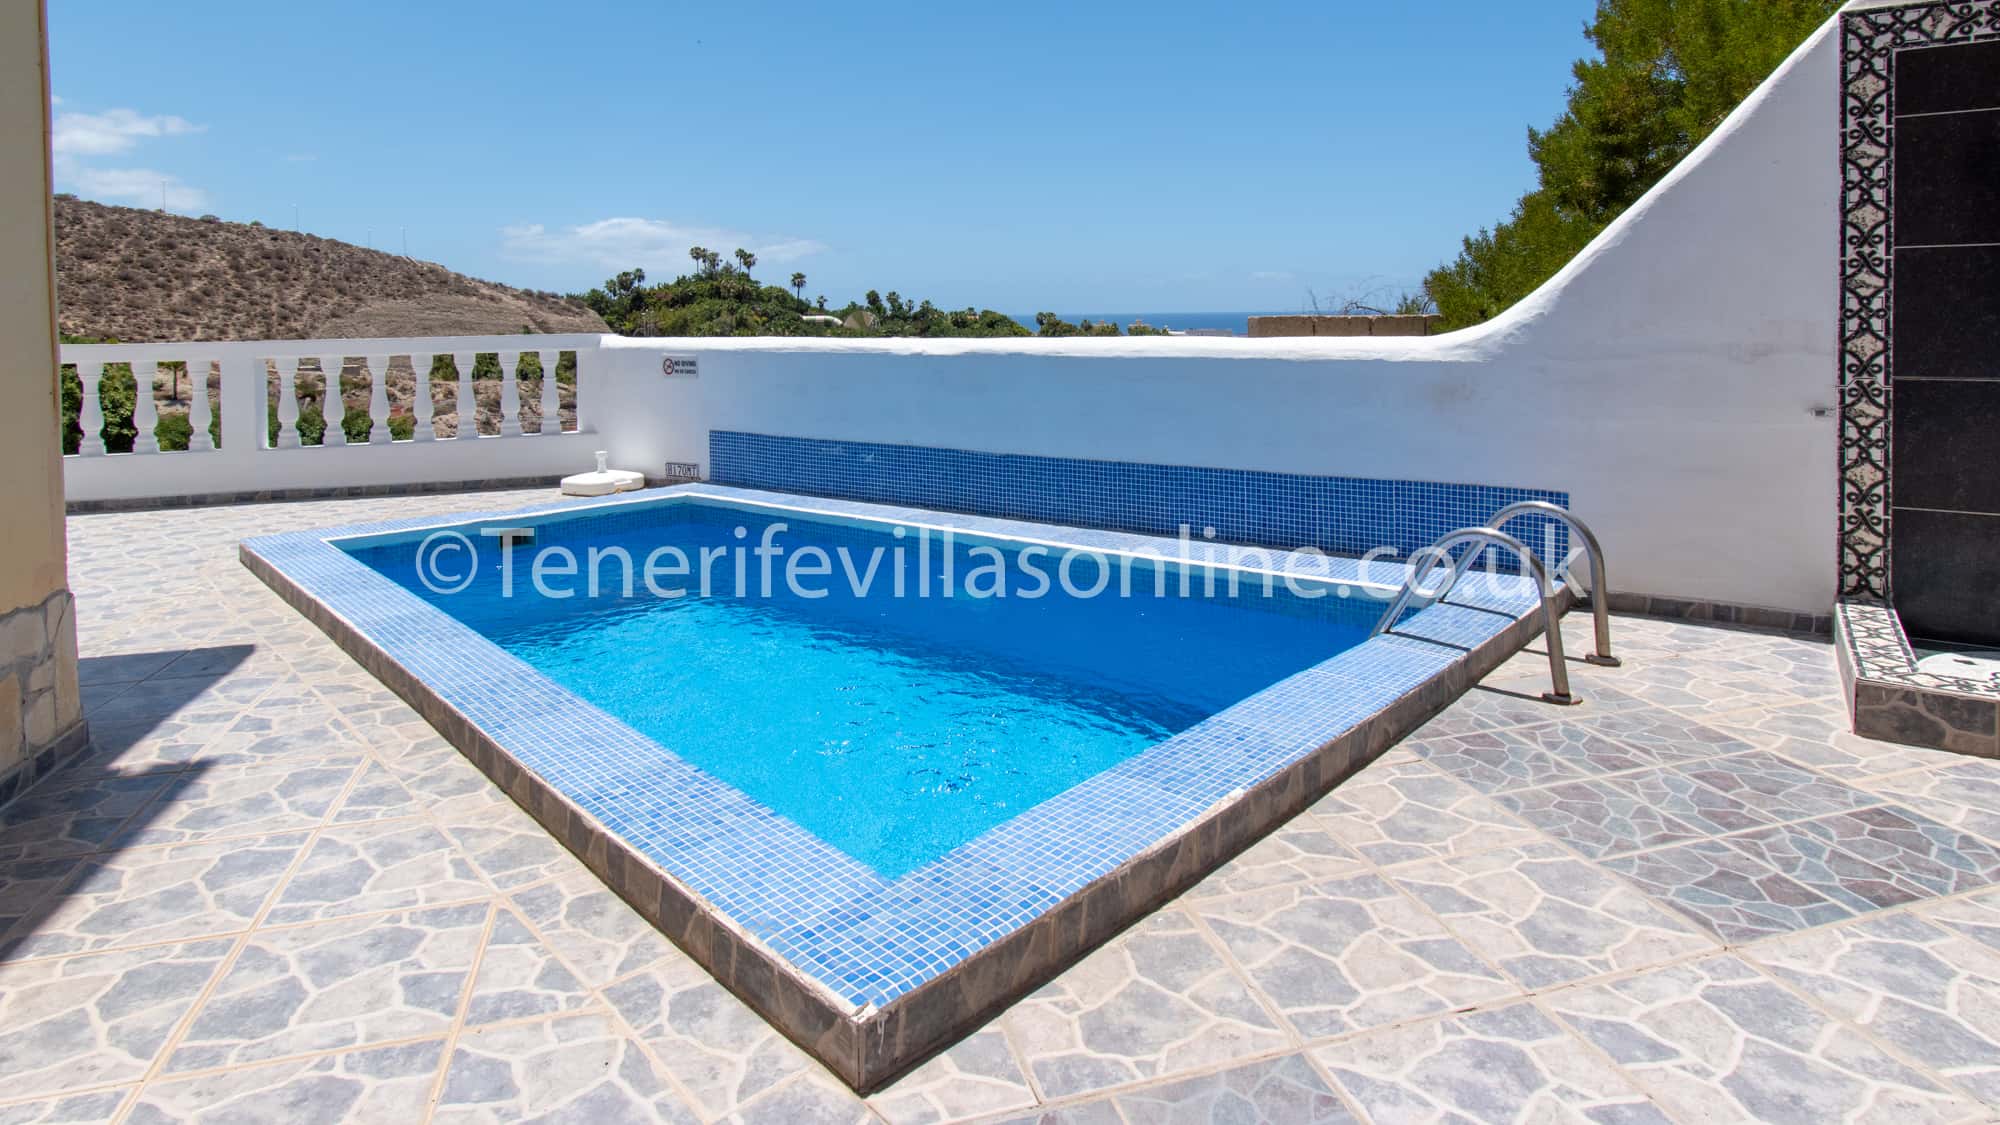 Penélope favorito picar 2 bedrooms villa for rental in Tenerife | San Eugenio Las Americas